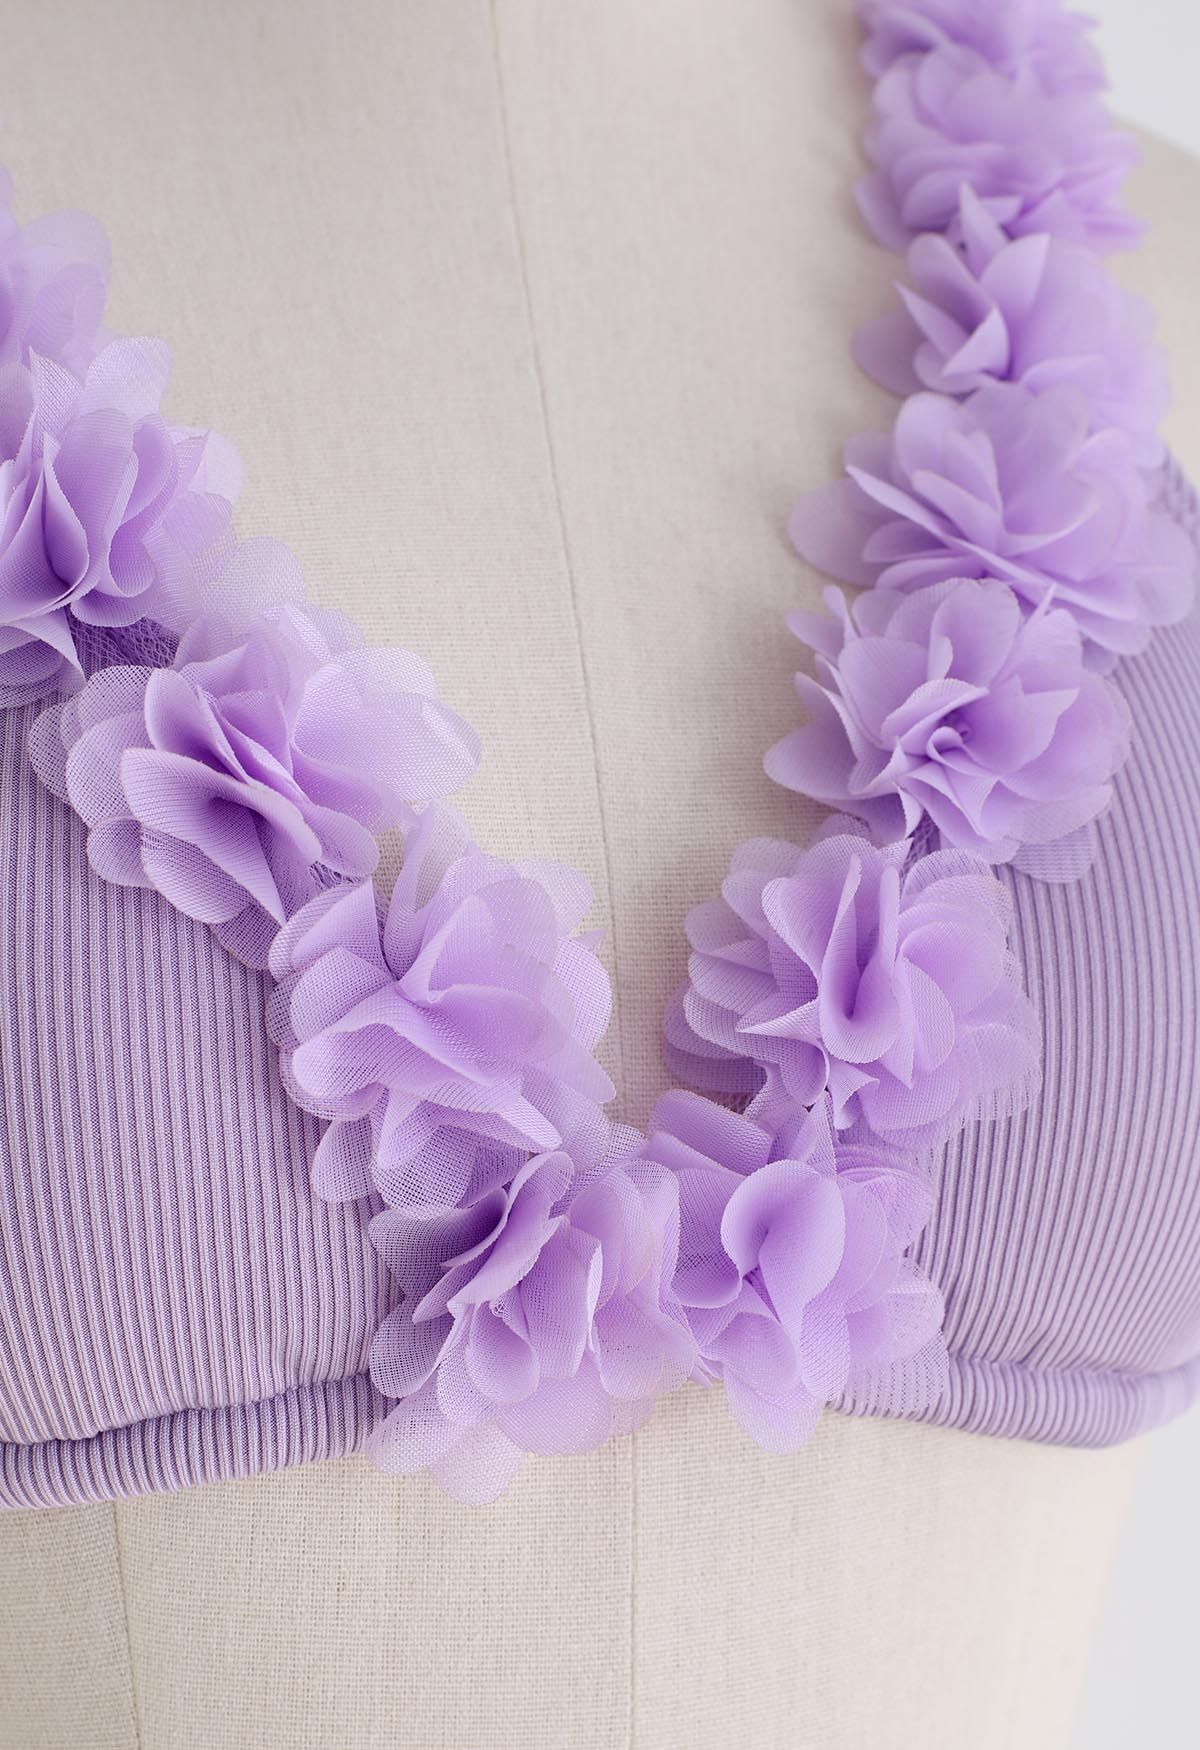 Conjunto de bikini con escote en V profundo floral de malla 3D en lila